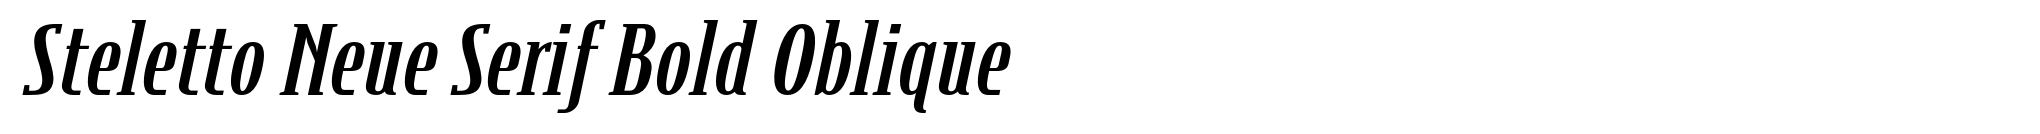 Steletto Neue Serif Bold Oblique image